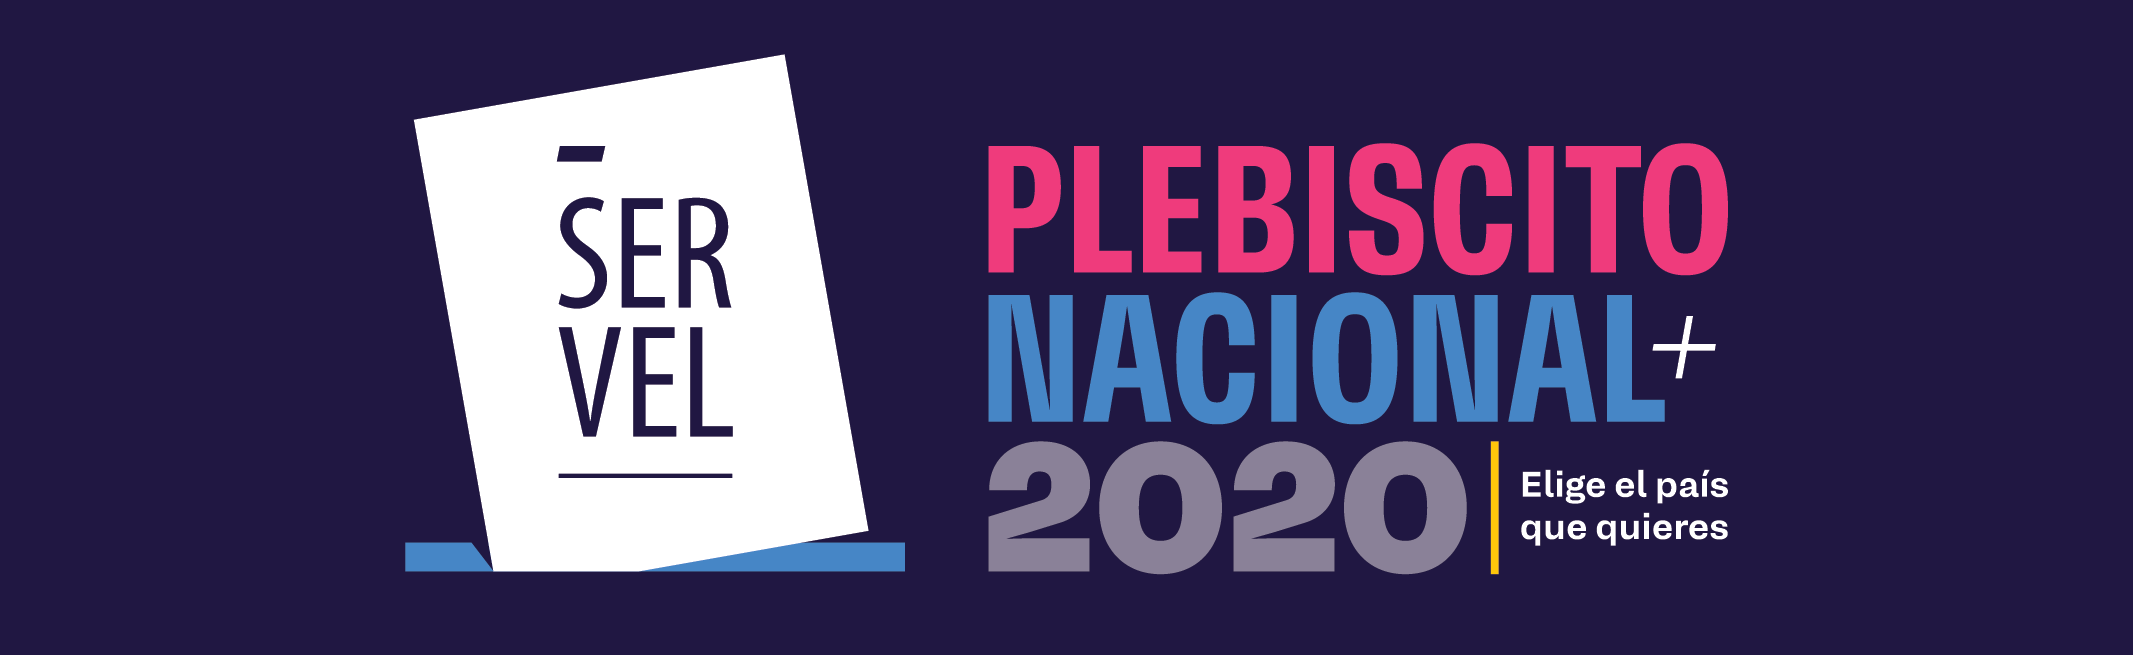 Gráfica a color del Plebiscito 2020 de Chile.